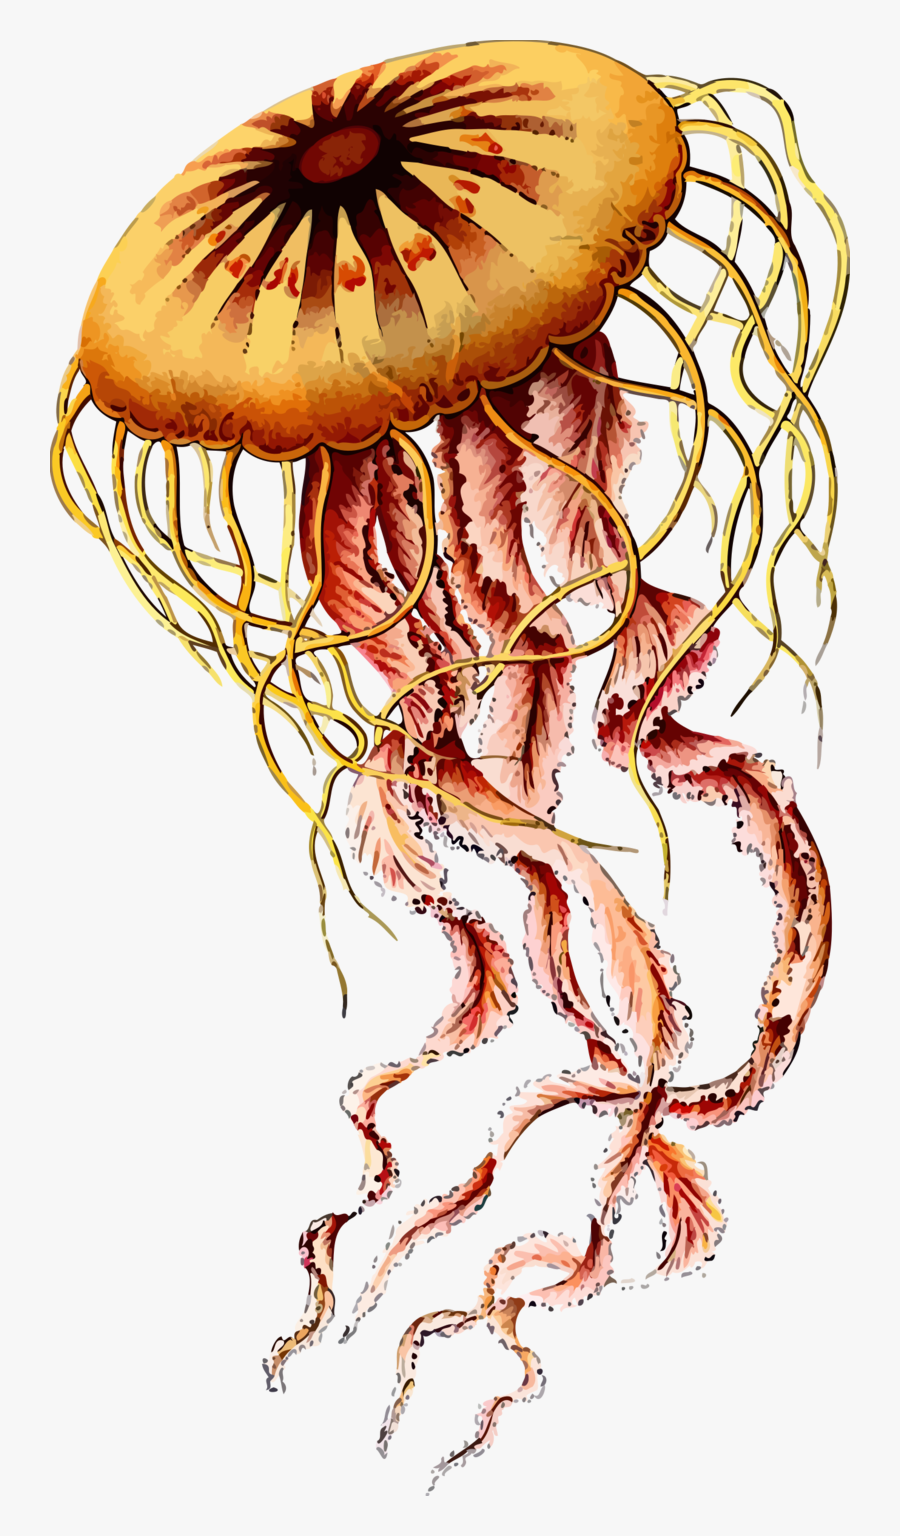 Jellyfish - Artwork Ernst Haeckel Jellyfish, Transparent Clipart